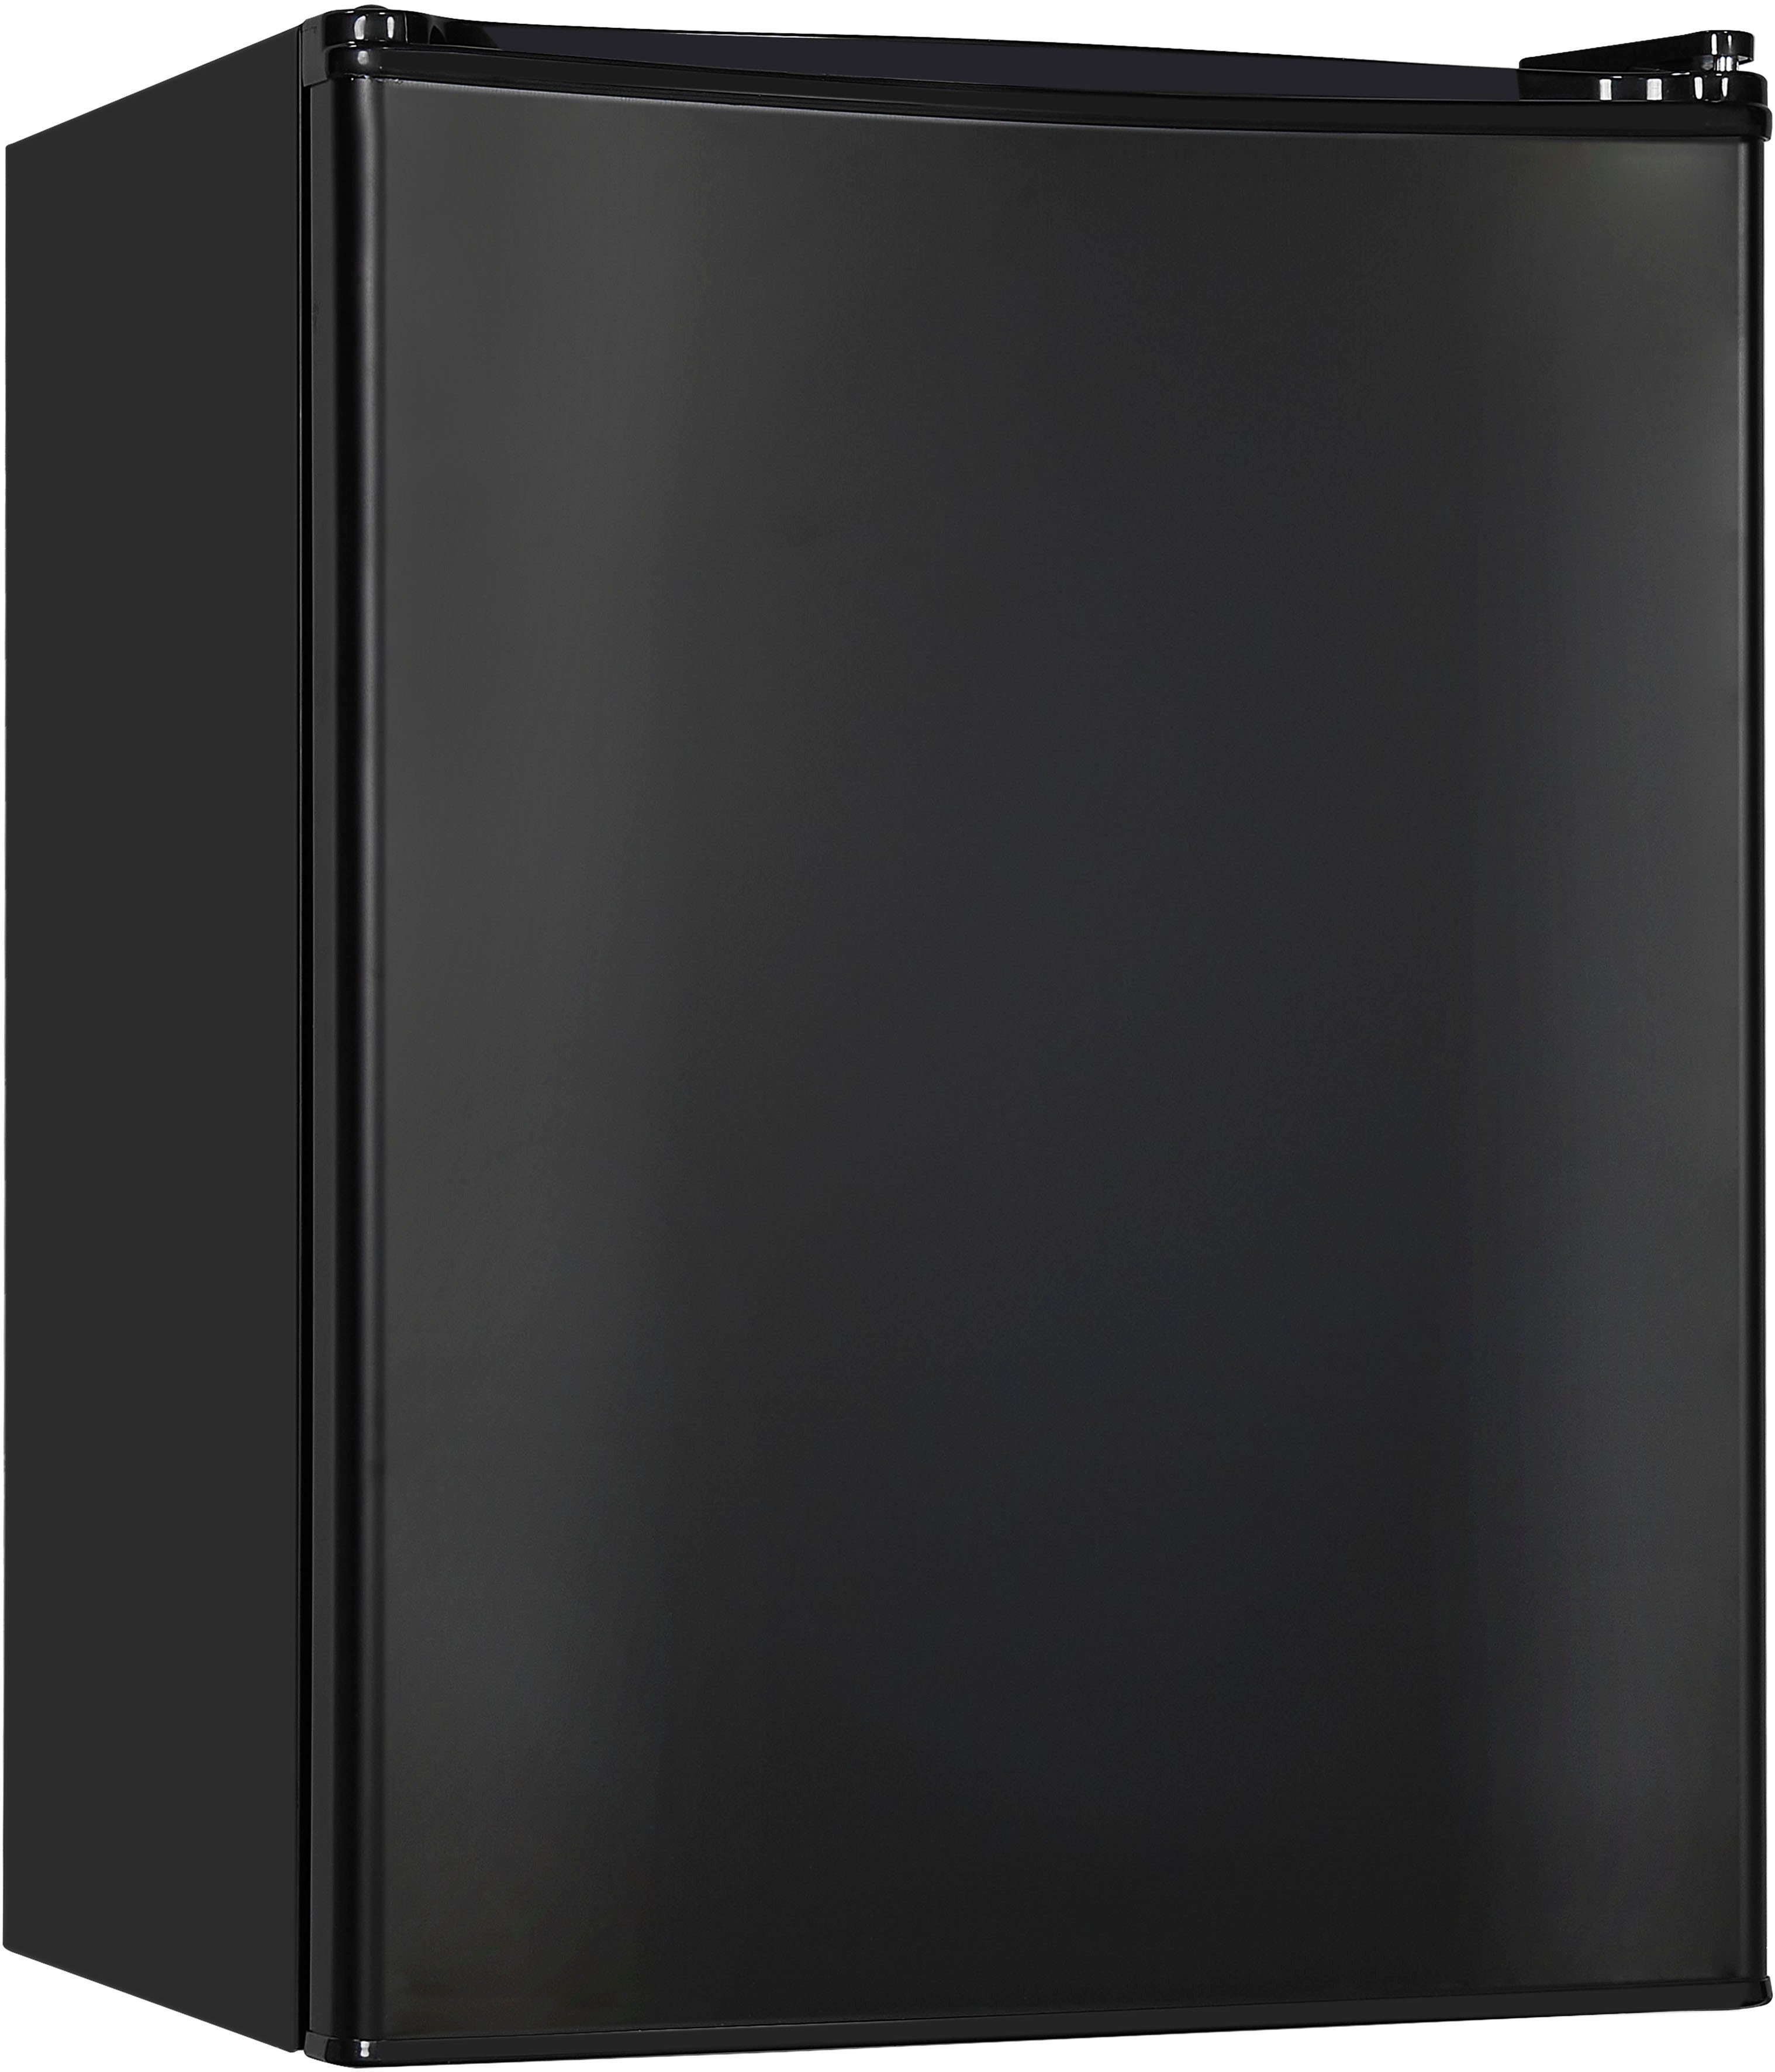 KB60-V-090E exquisit 45 hoch, cm breit schwarz, cm 62 Kühlschrank